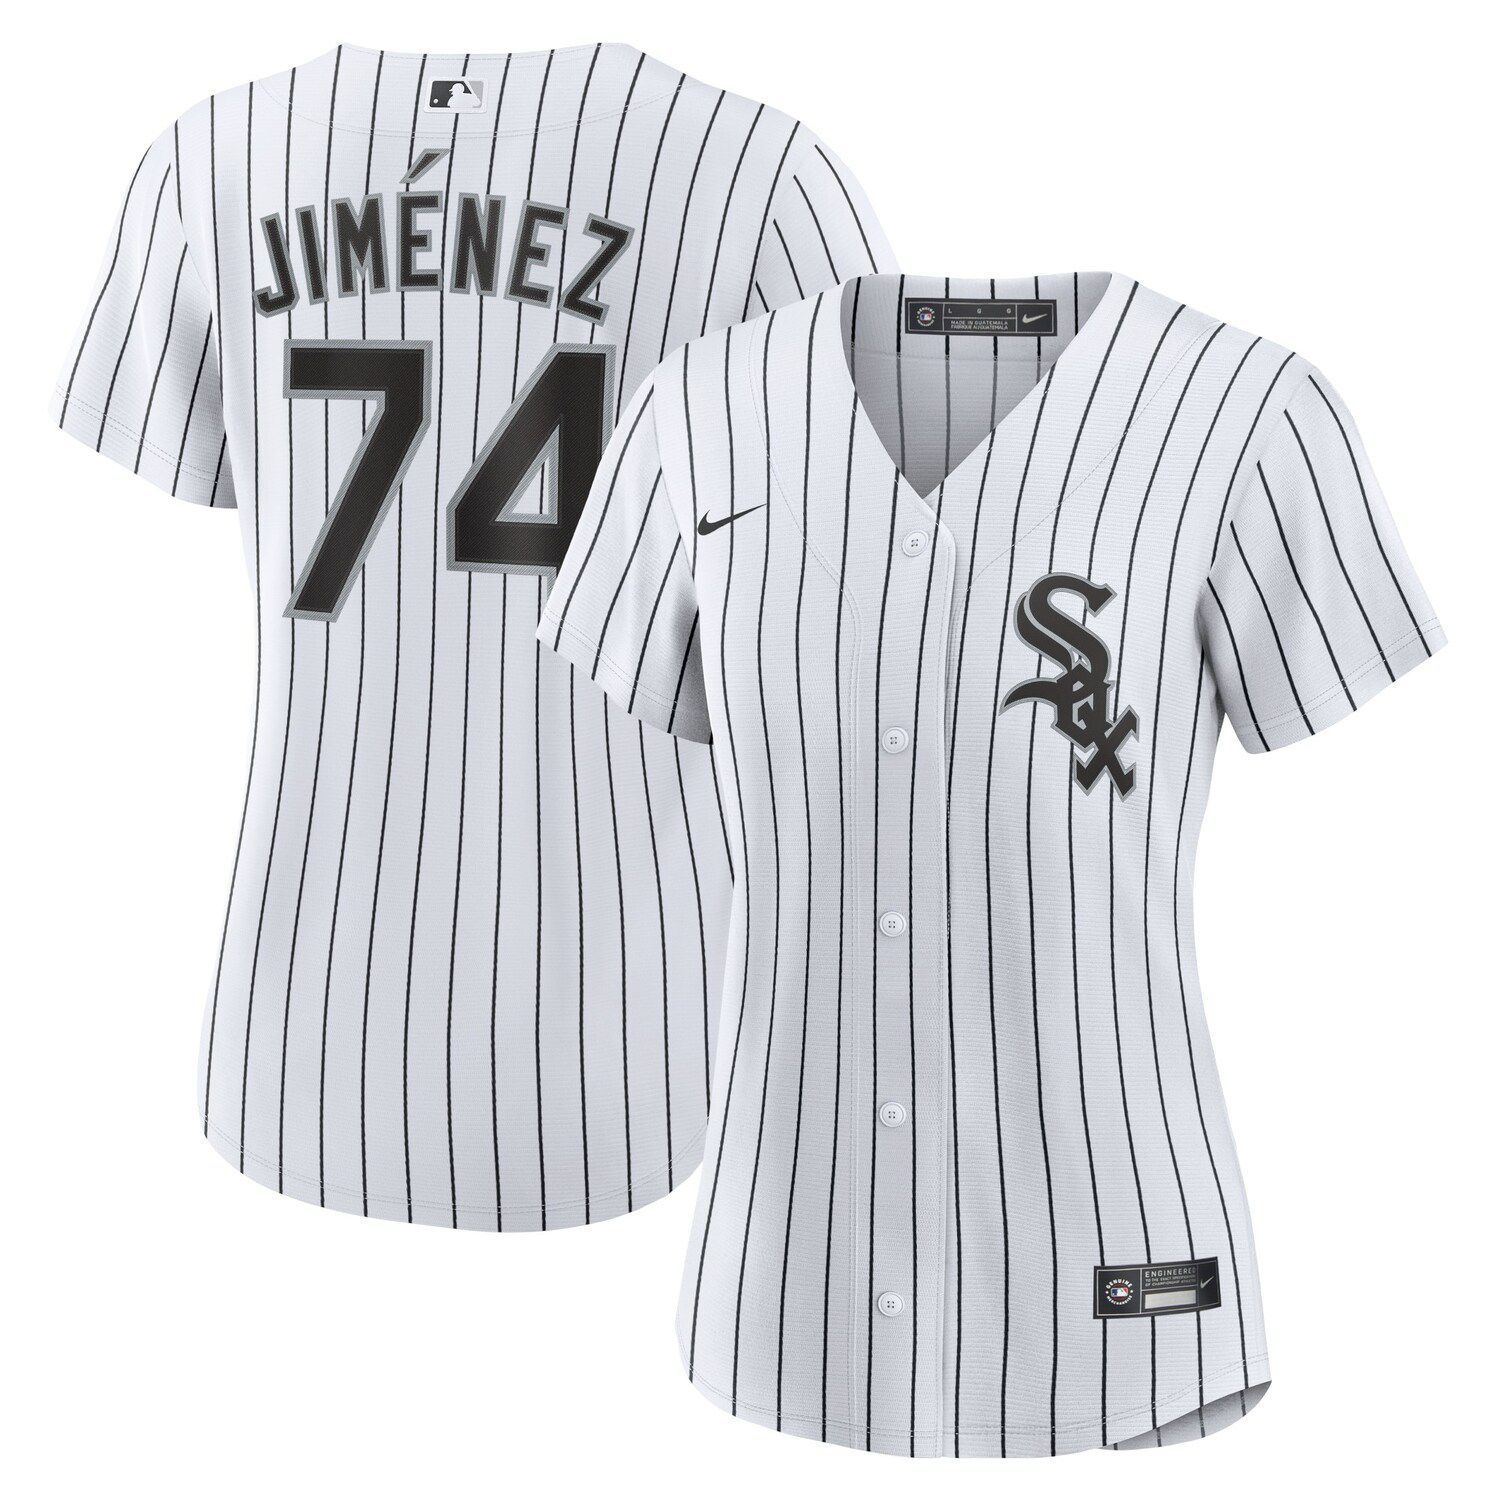 jimenez white sox jersey